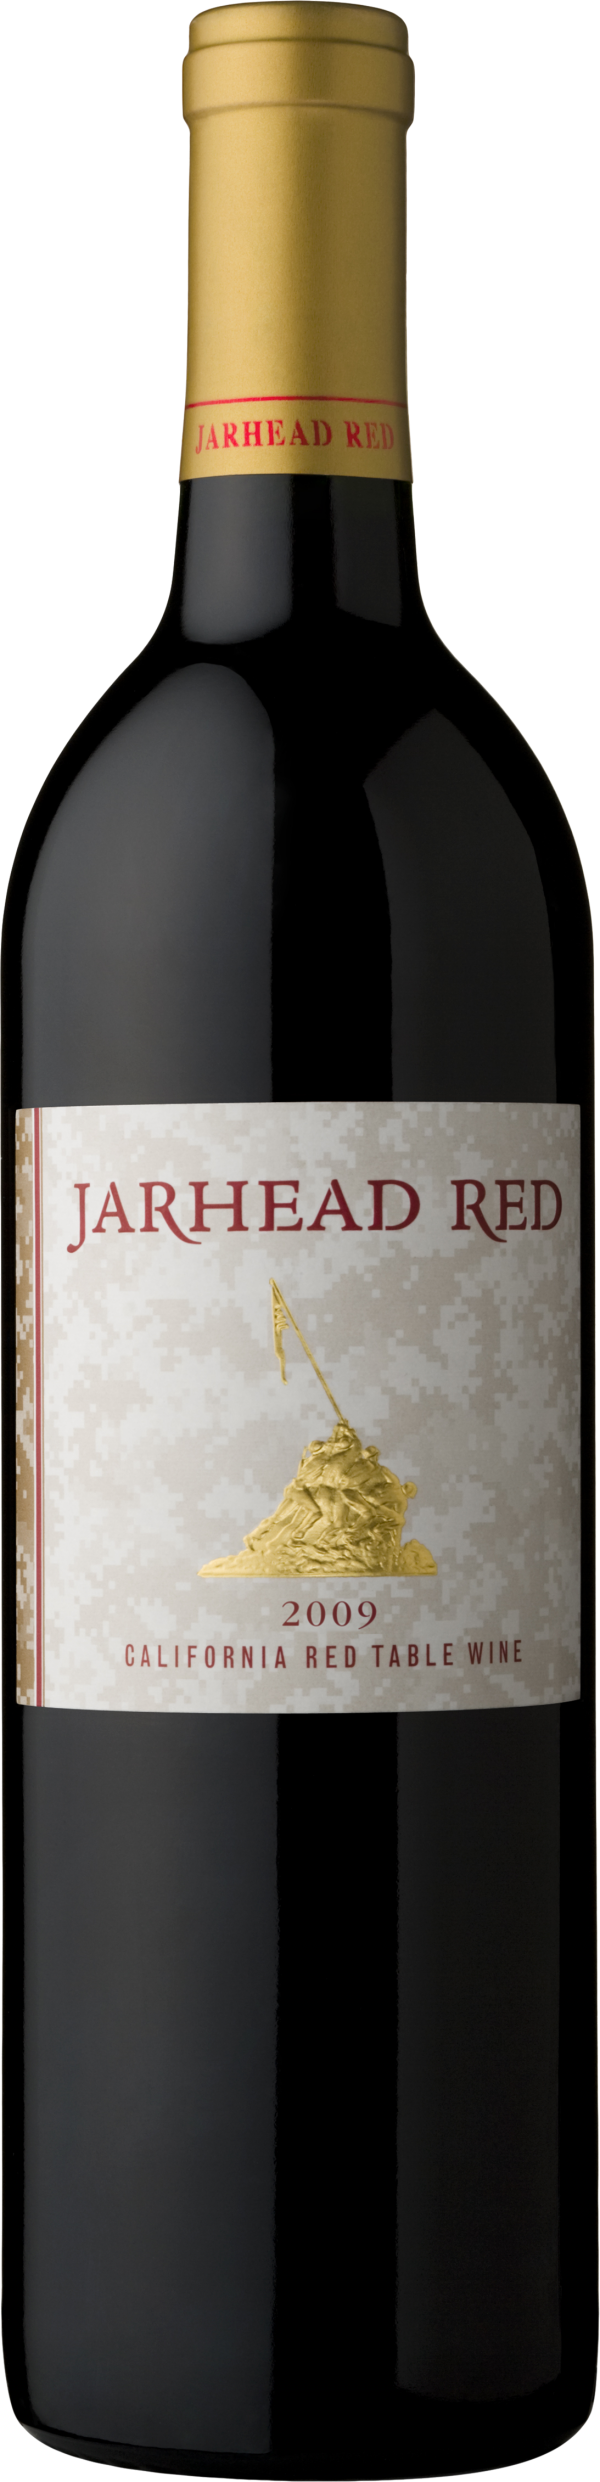 jarhed wine bottel free png download